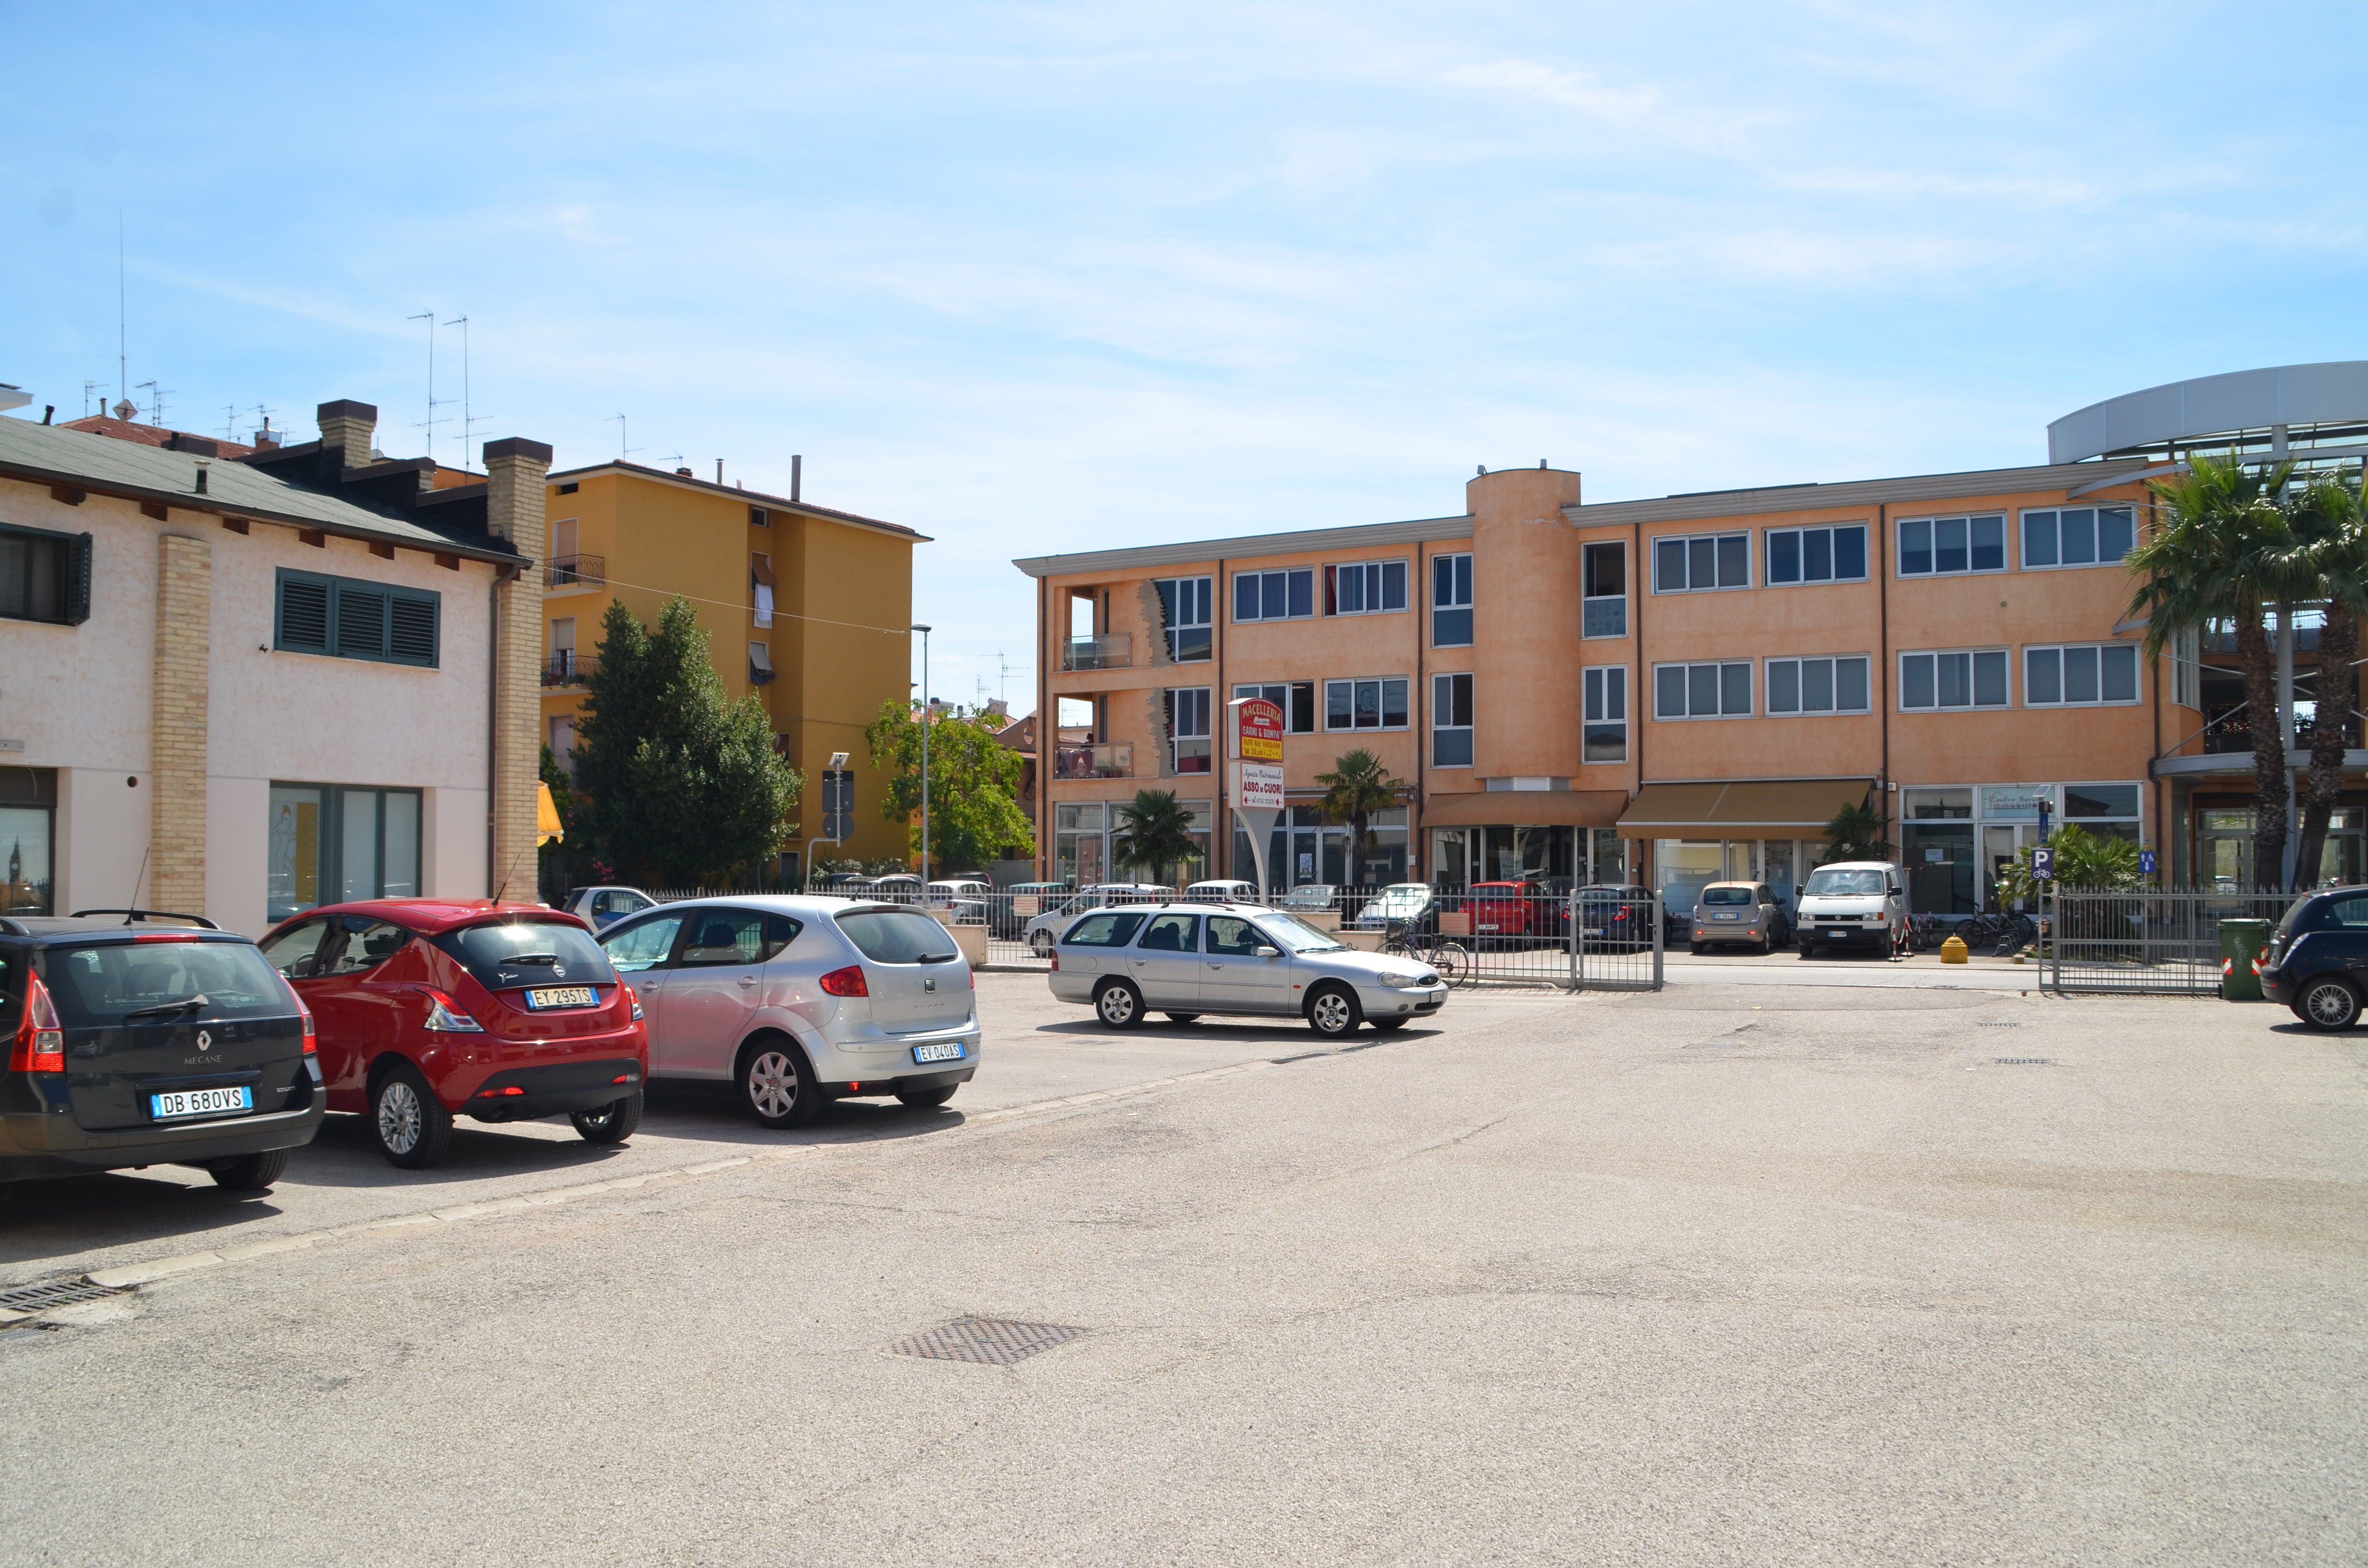 Attivit? commerciale in affitto/gestione, San Benedetto del Tronto porto d'ascoli centrale (zona tra la ss16 e ferrov